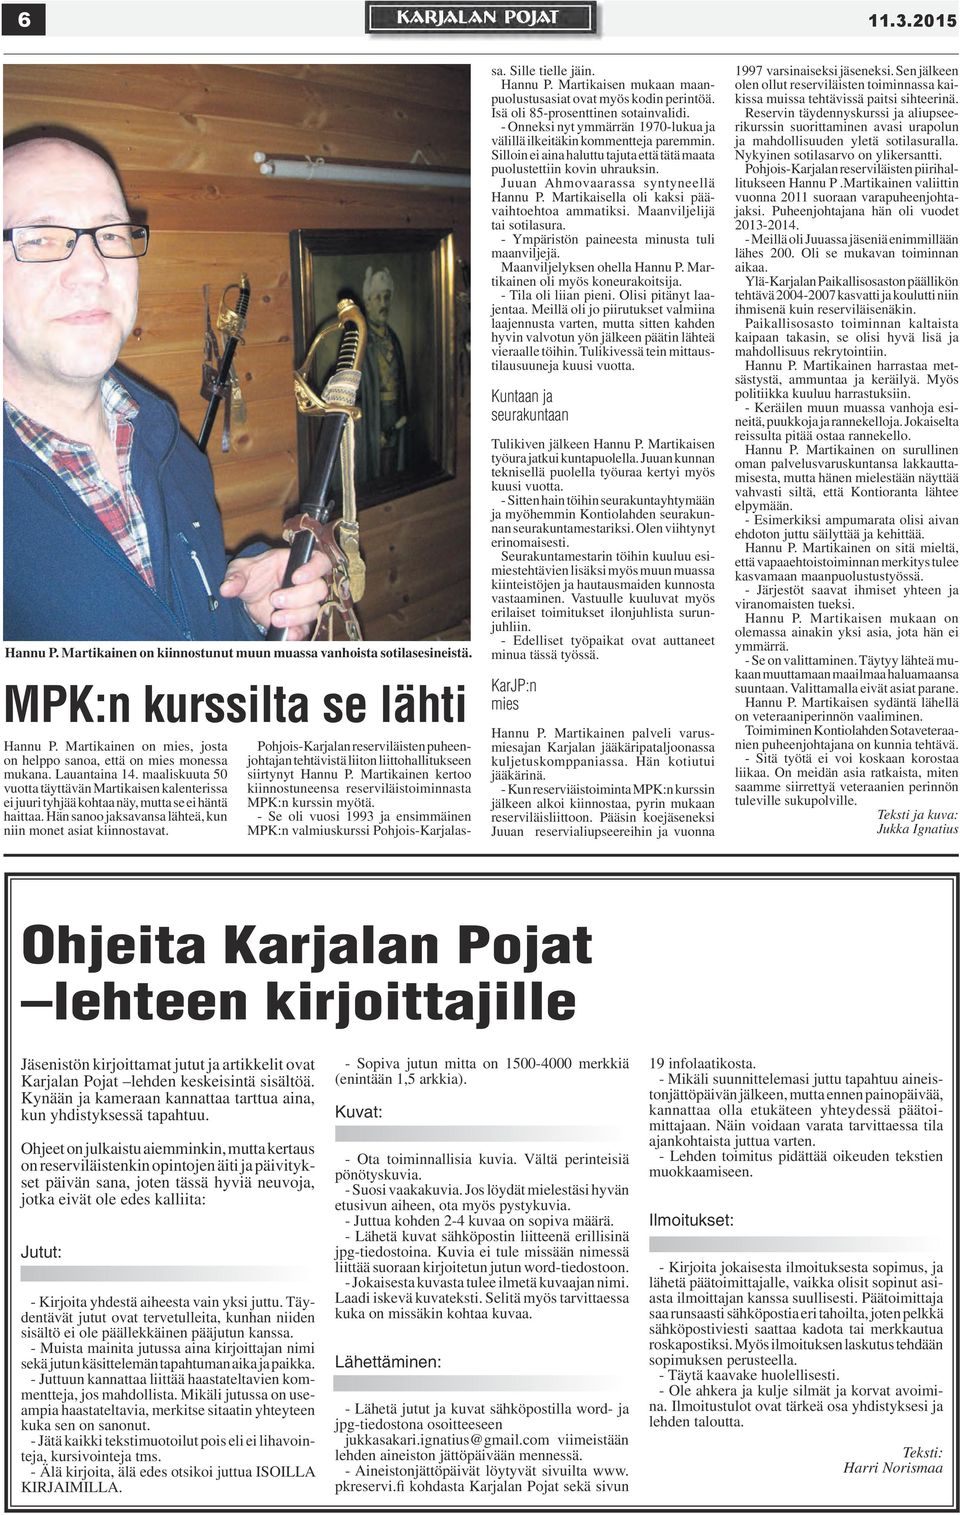 Pohjois-Karjalan reserviläisten puheenjohtajan tehtävistä liiton liittohallitukseen siirtynyt Hannu P. Martikainen kertoo kiinnostuneensa reserviläistoiminnasta MPK:n kurssin myötä.